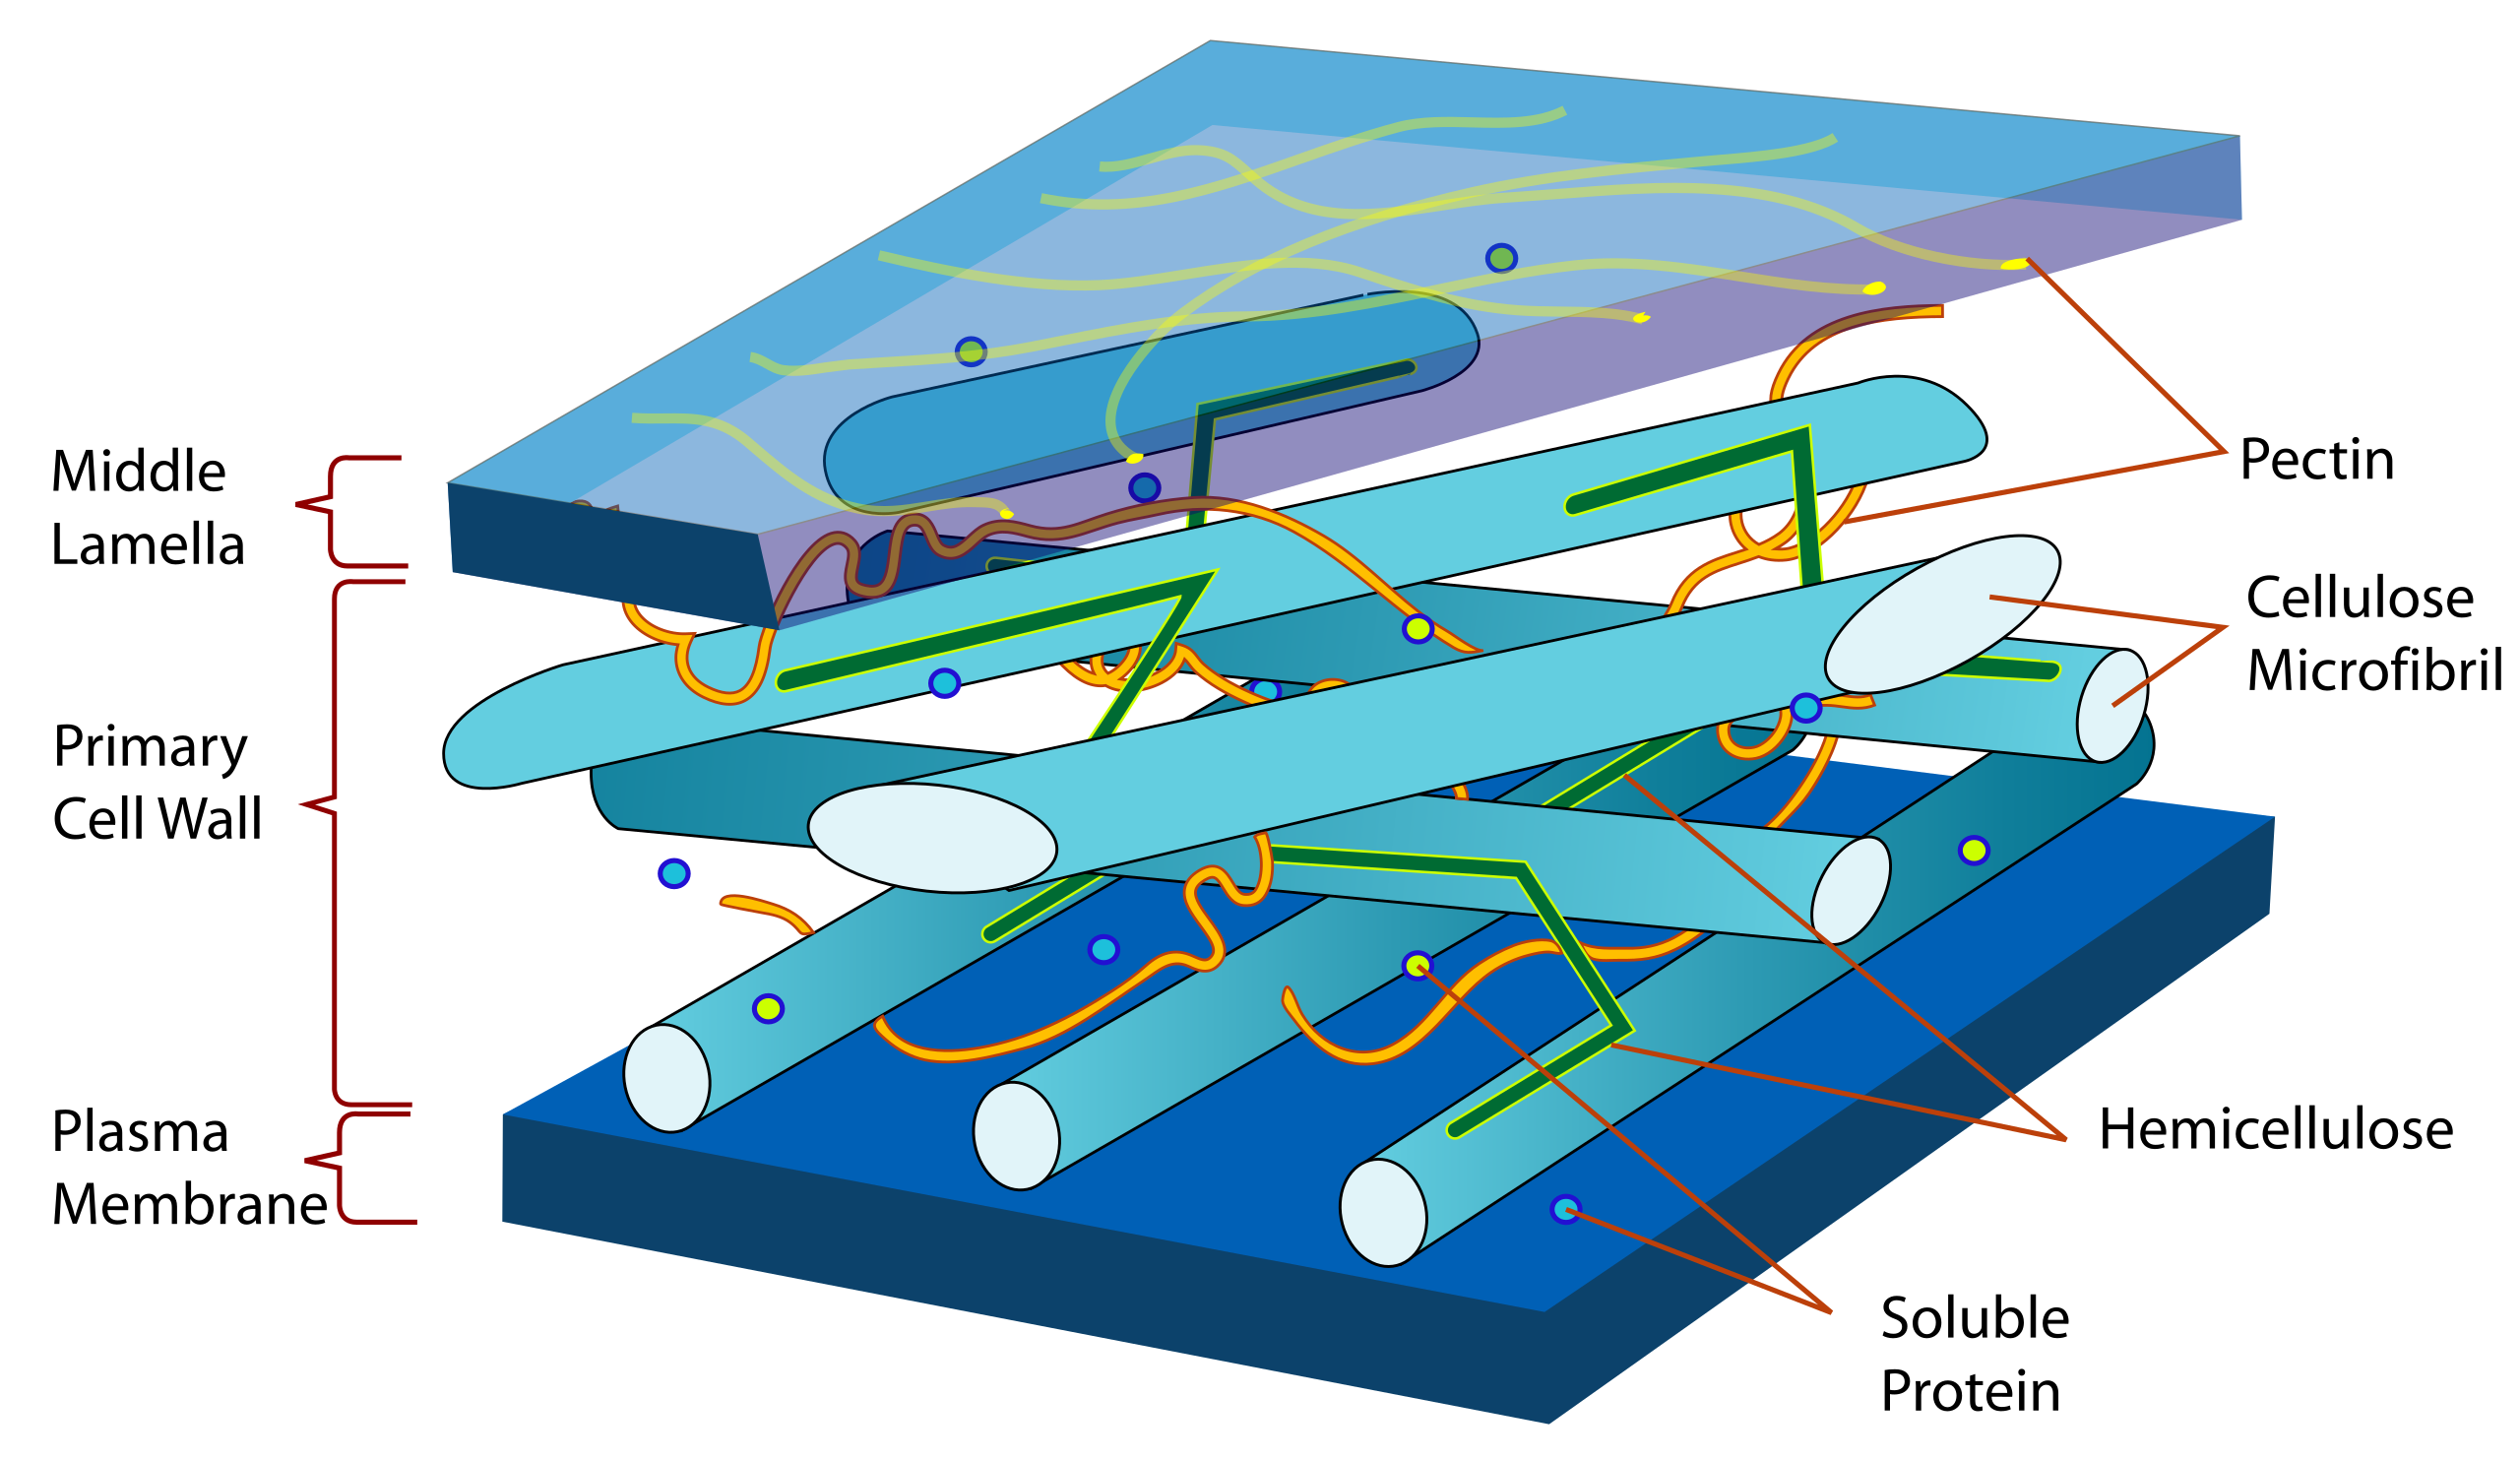 Las estructuras en capas que forman la membrana celular, la pared primaria y las laminillas medias